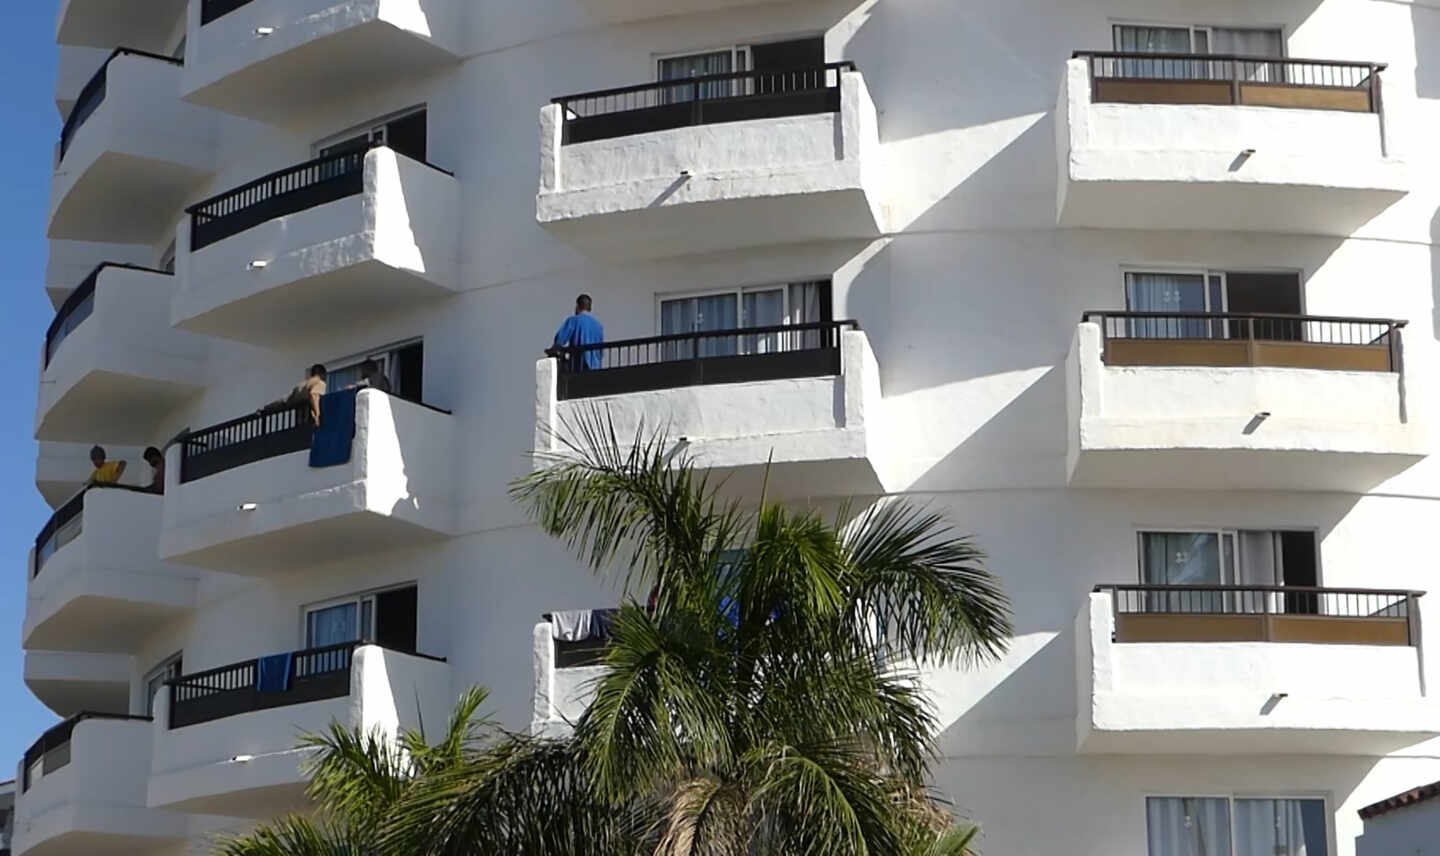 Fachada y balcones del hotel Waikiki donde han acogido a decenas de migrantes.